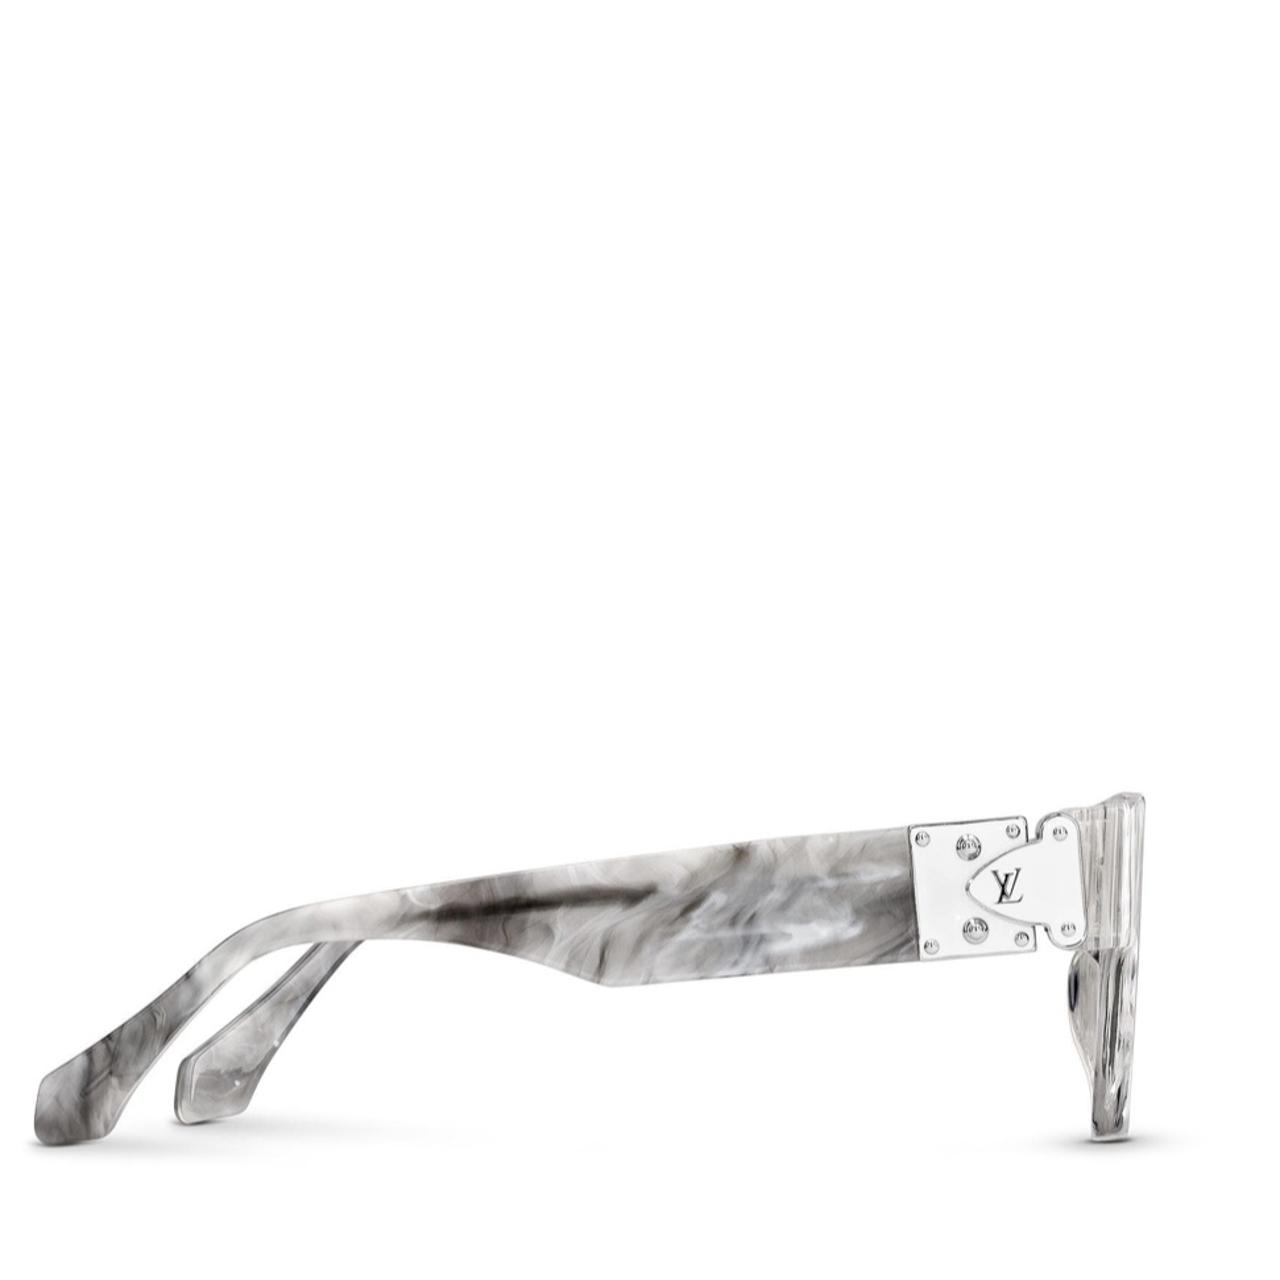 Louis Vuitton, 'Les Amants du pont neuf' sunglasses and a Chouchou  scrunchie. - Bukowskis